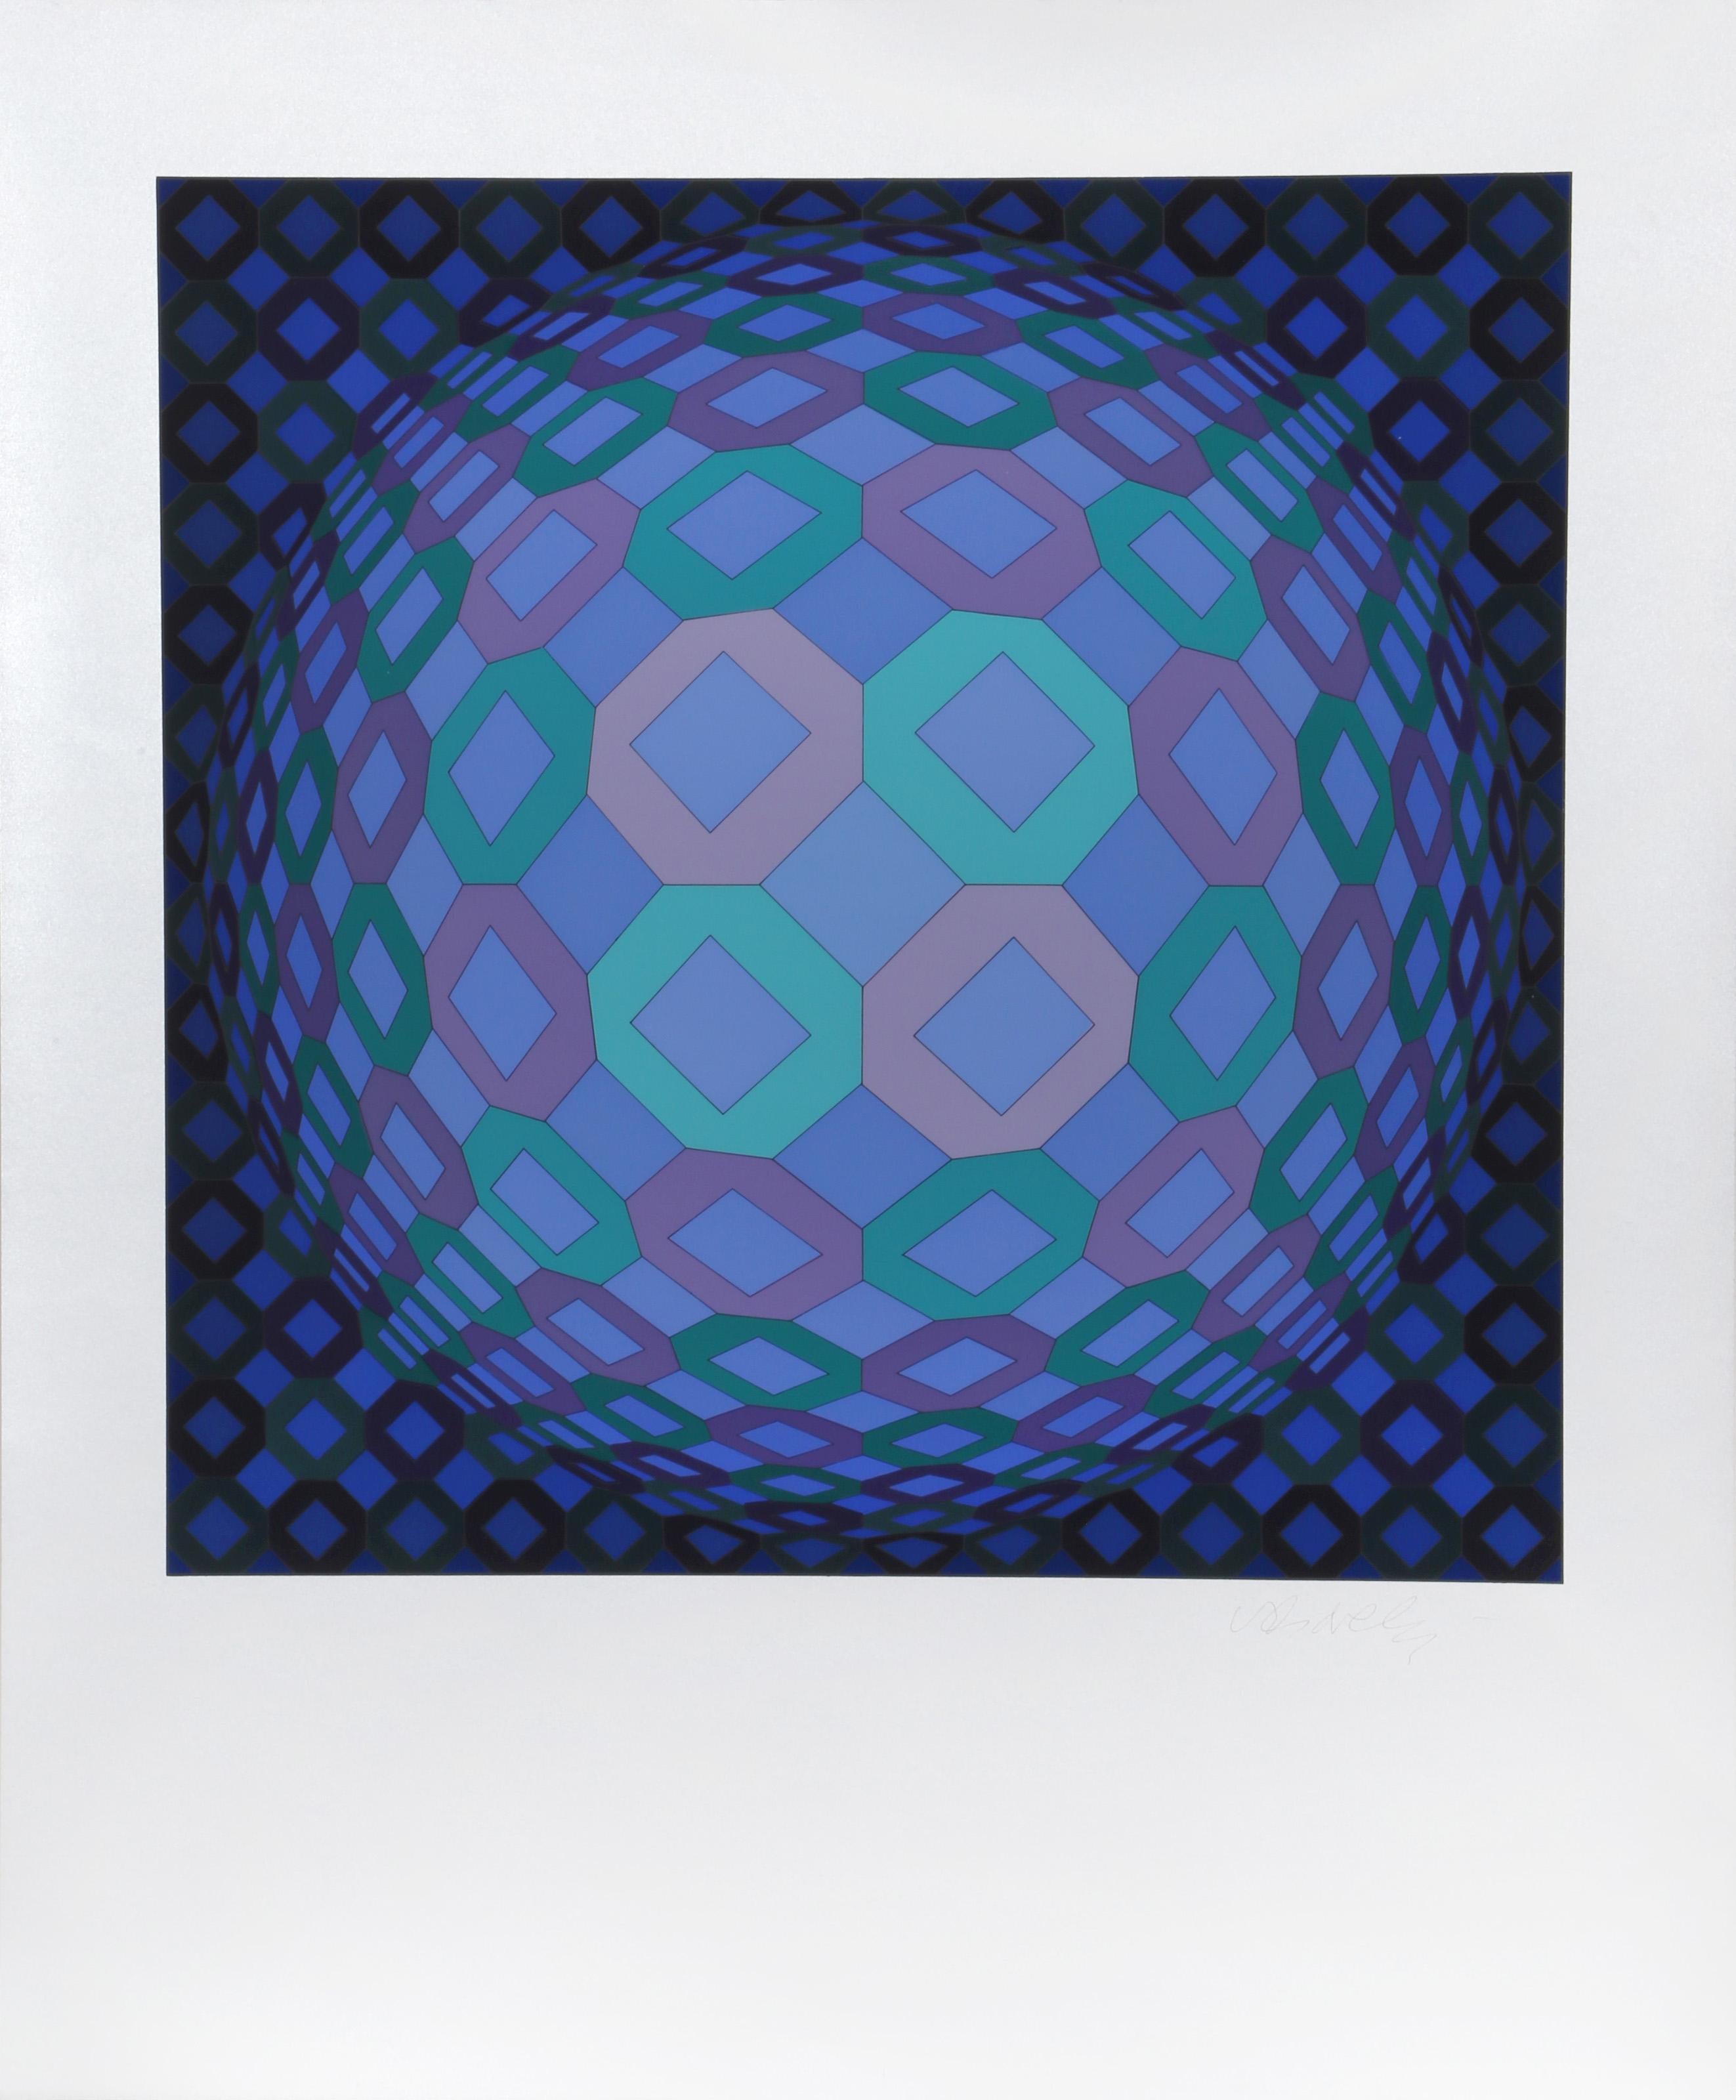 Das Op-Art-Gemälde von Victor Vasarely erzeugt ein Gefühl der Bewegung, da es sich zu einer Kugel zu verformen scheint, die von Streifen in einem geometrischen Muster überlagert wird. Dieser Druck enthält auf der Rückseite die Angaben des